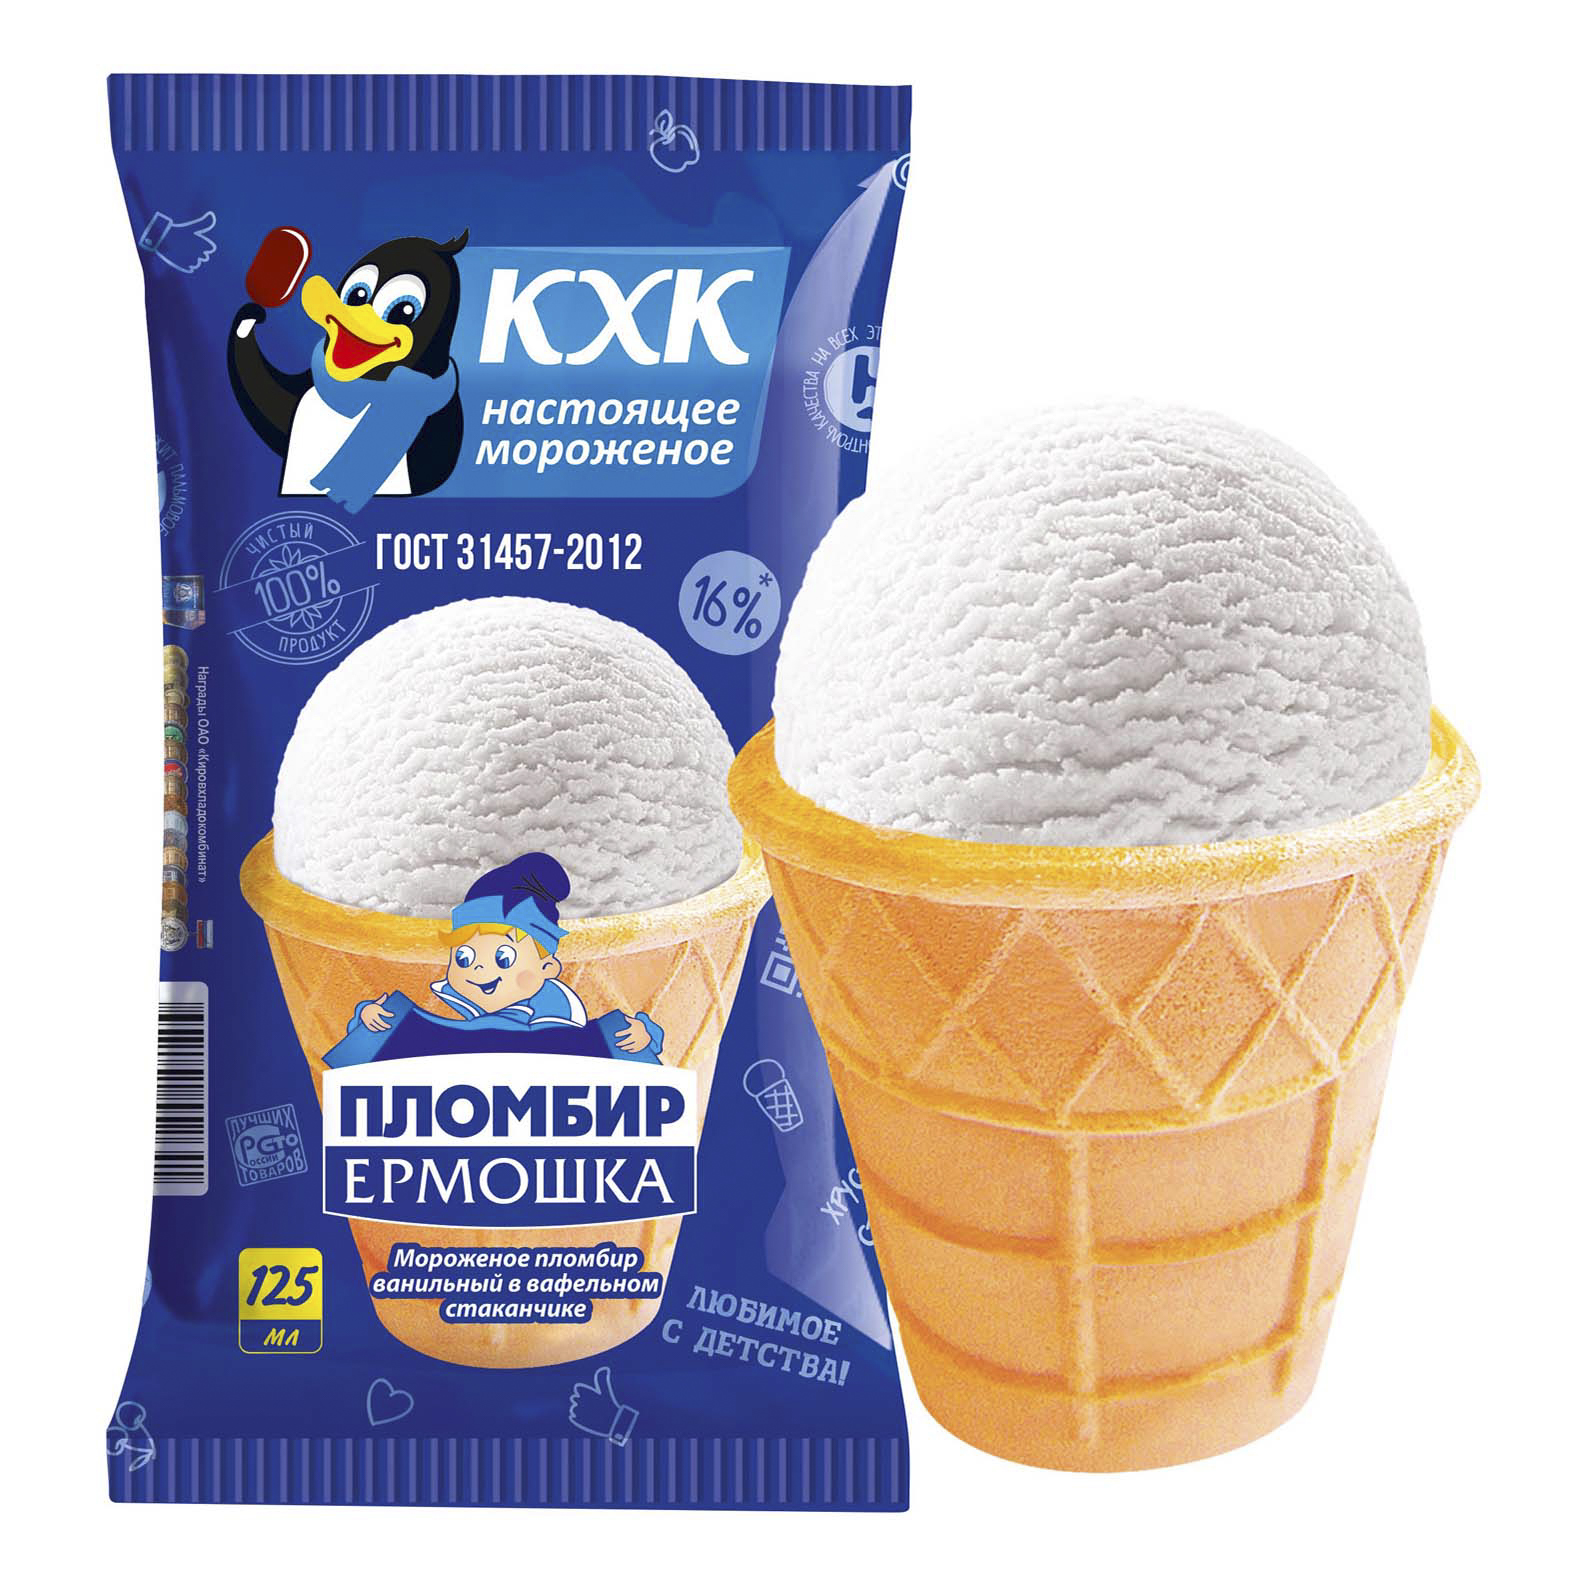 Кхк Мороженое